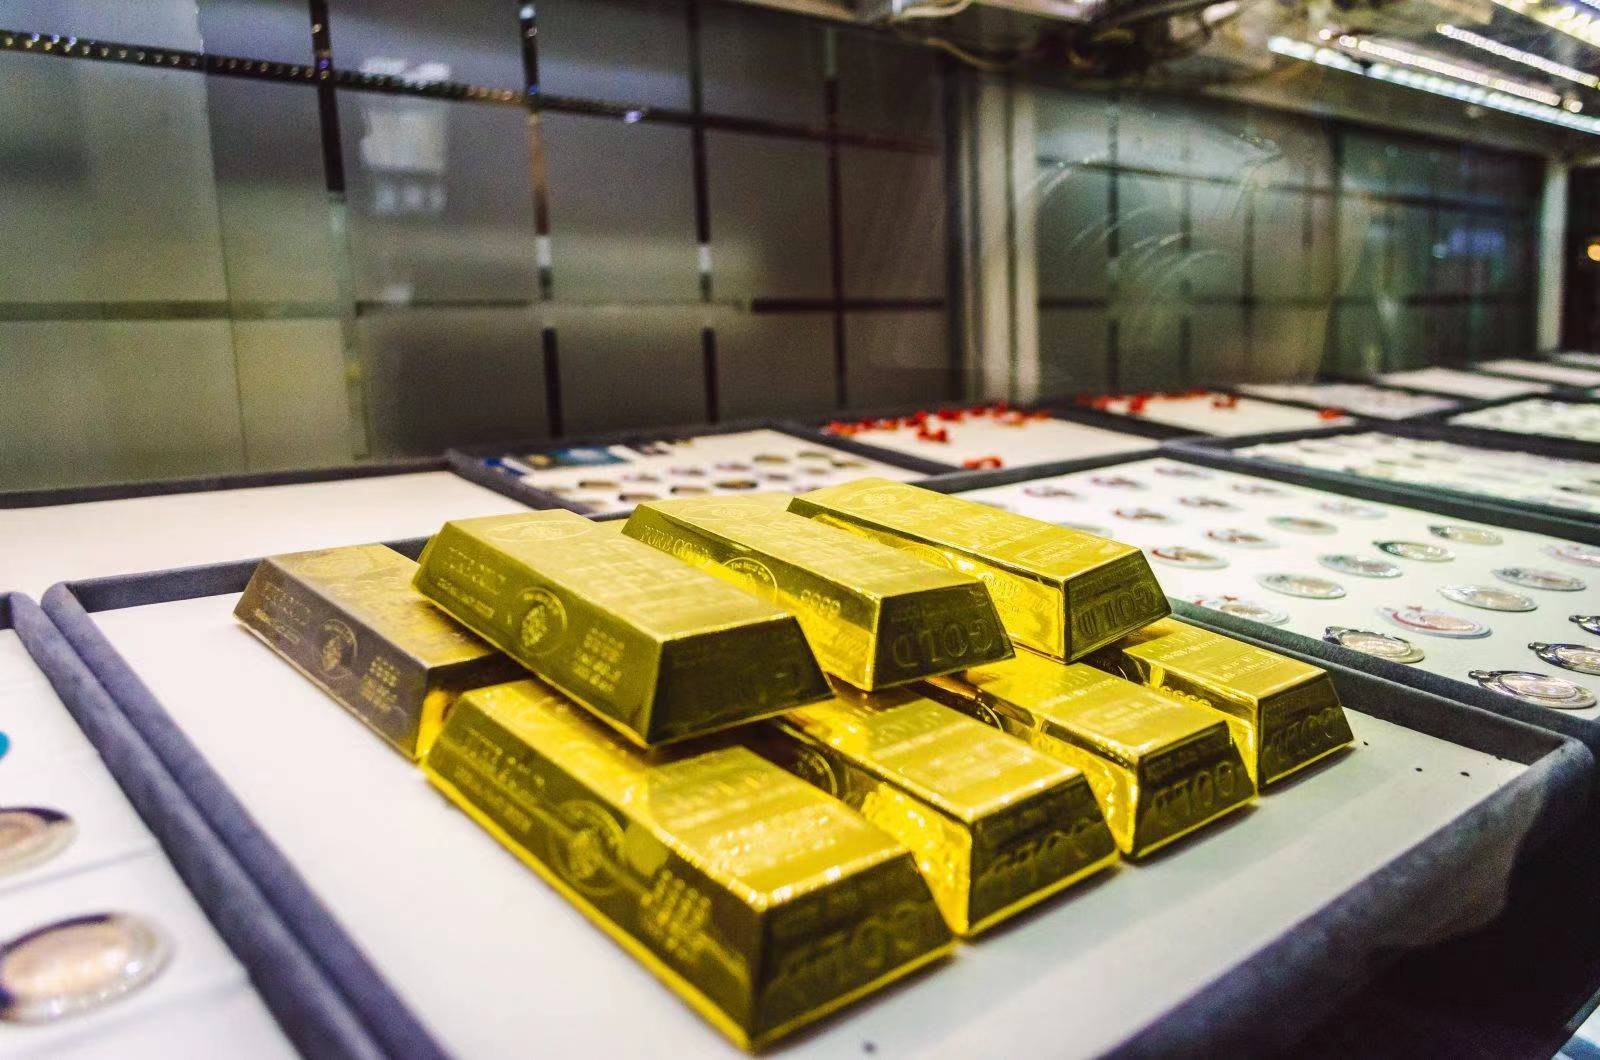 1.6吨黄金在加拿大机场被盗，这是一起孤立事件